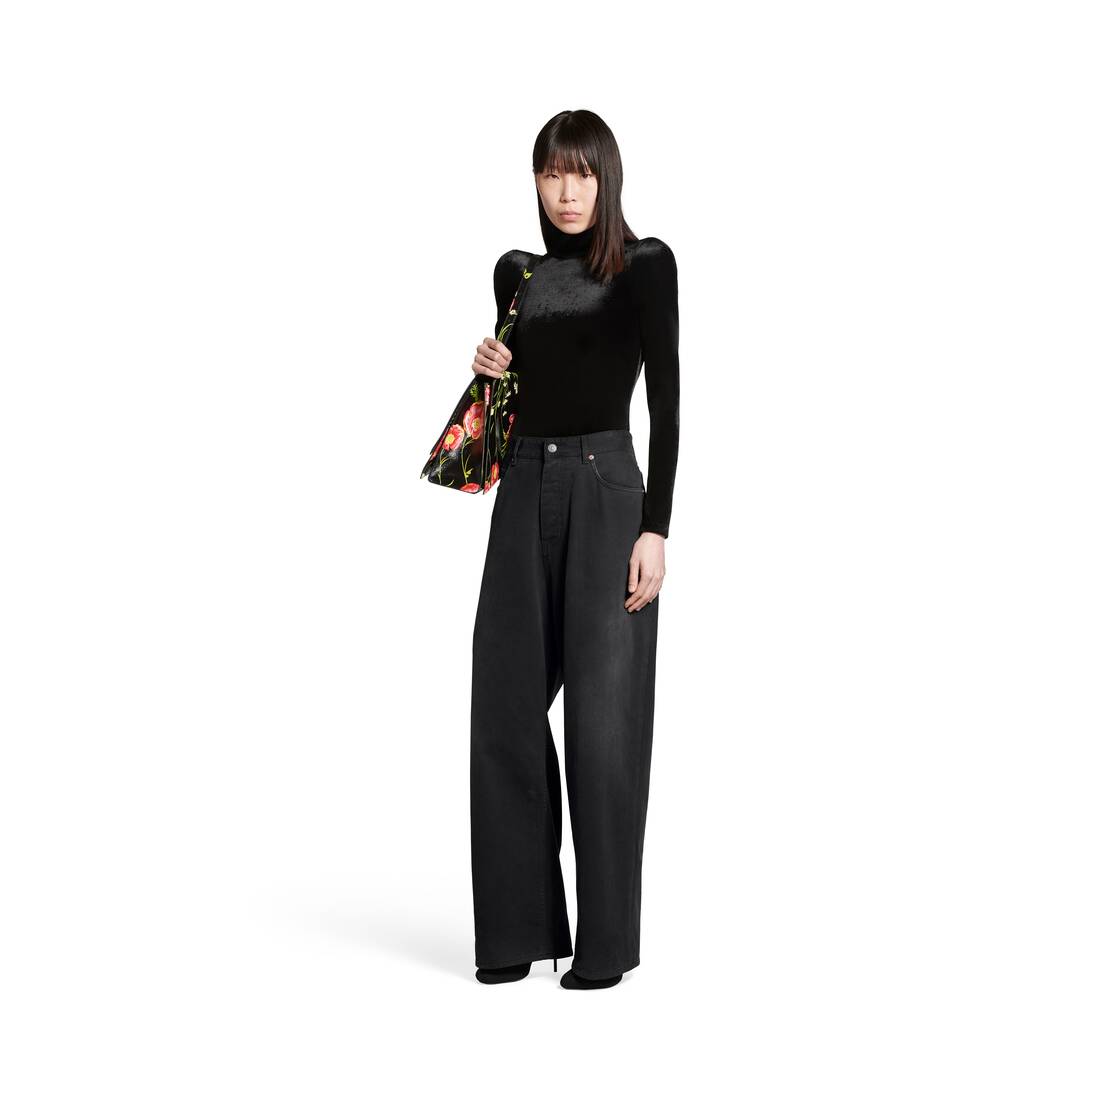 Zara Beige Linen Blend Cargo Trousers. Ref 7385/492. Size M | eBay